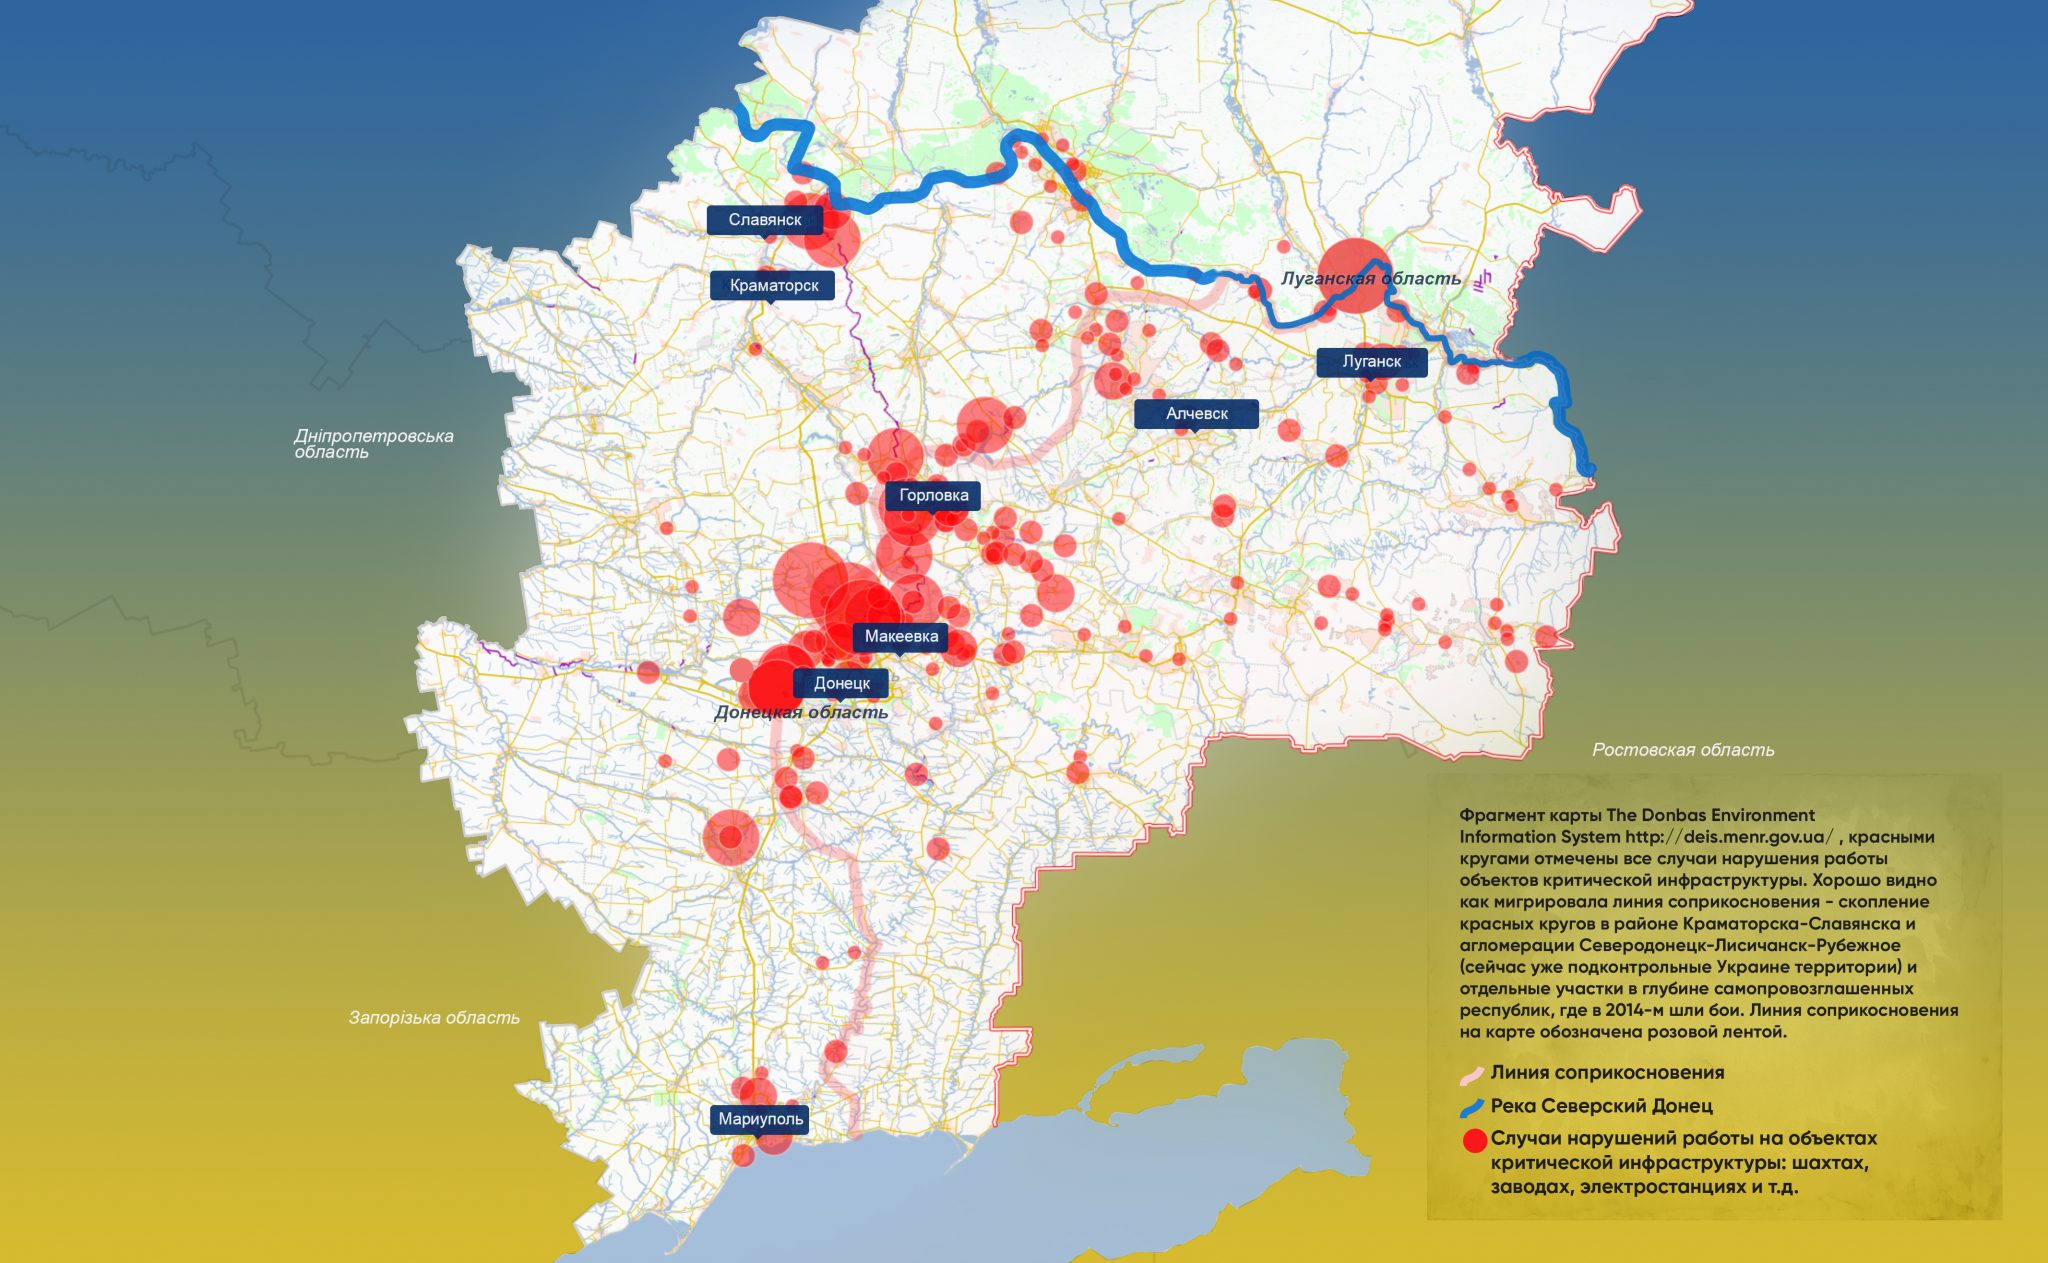 Нарушения работы на объектах критической инфраструктуры в Донецкой и Луганской областях. Иллюстрация DELFI